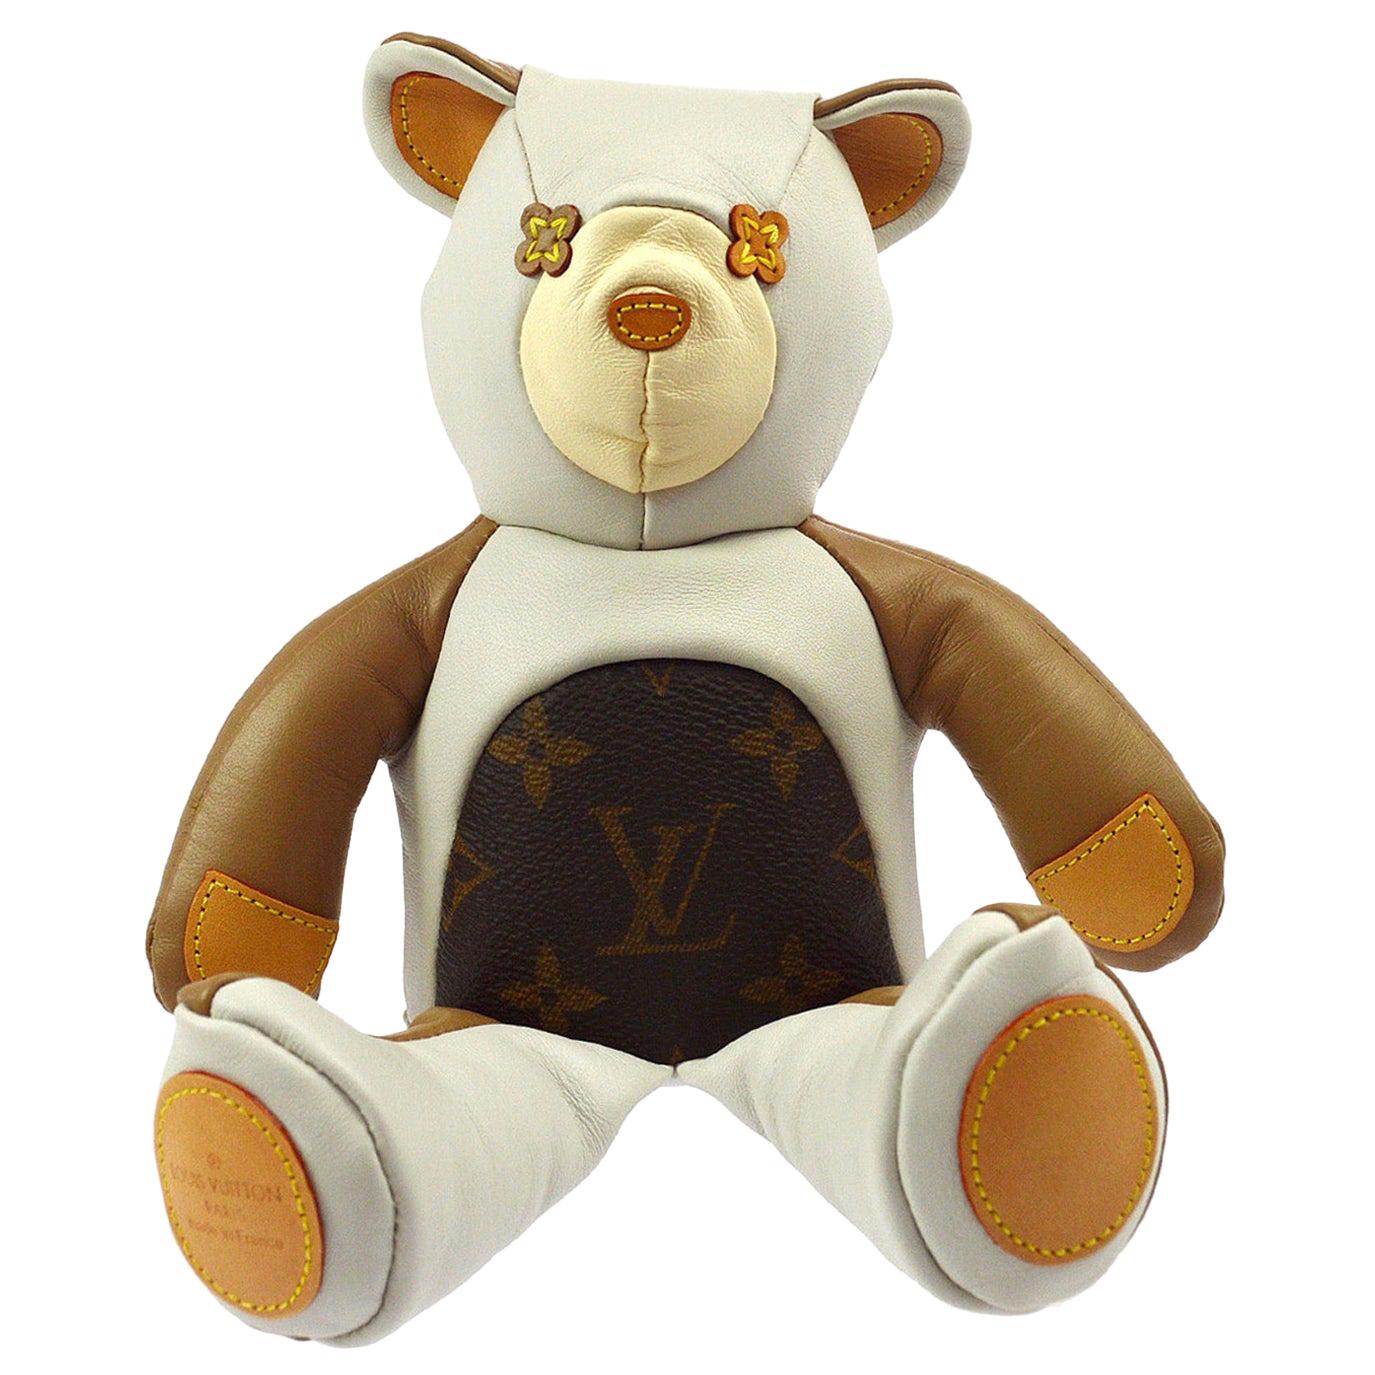 LOUIS VUITTON GI0142 Monogram doudou louis teddy bear Bear doll bear Plush  Doll